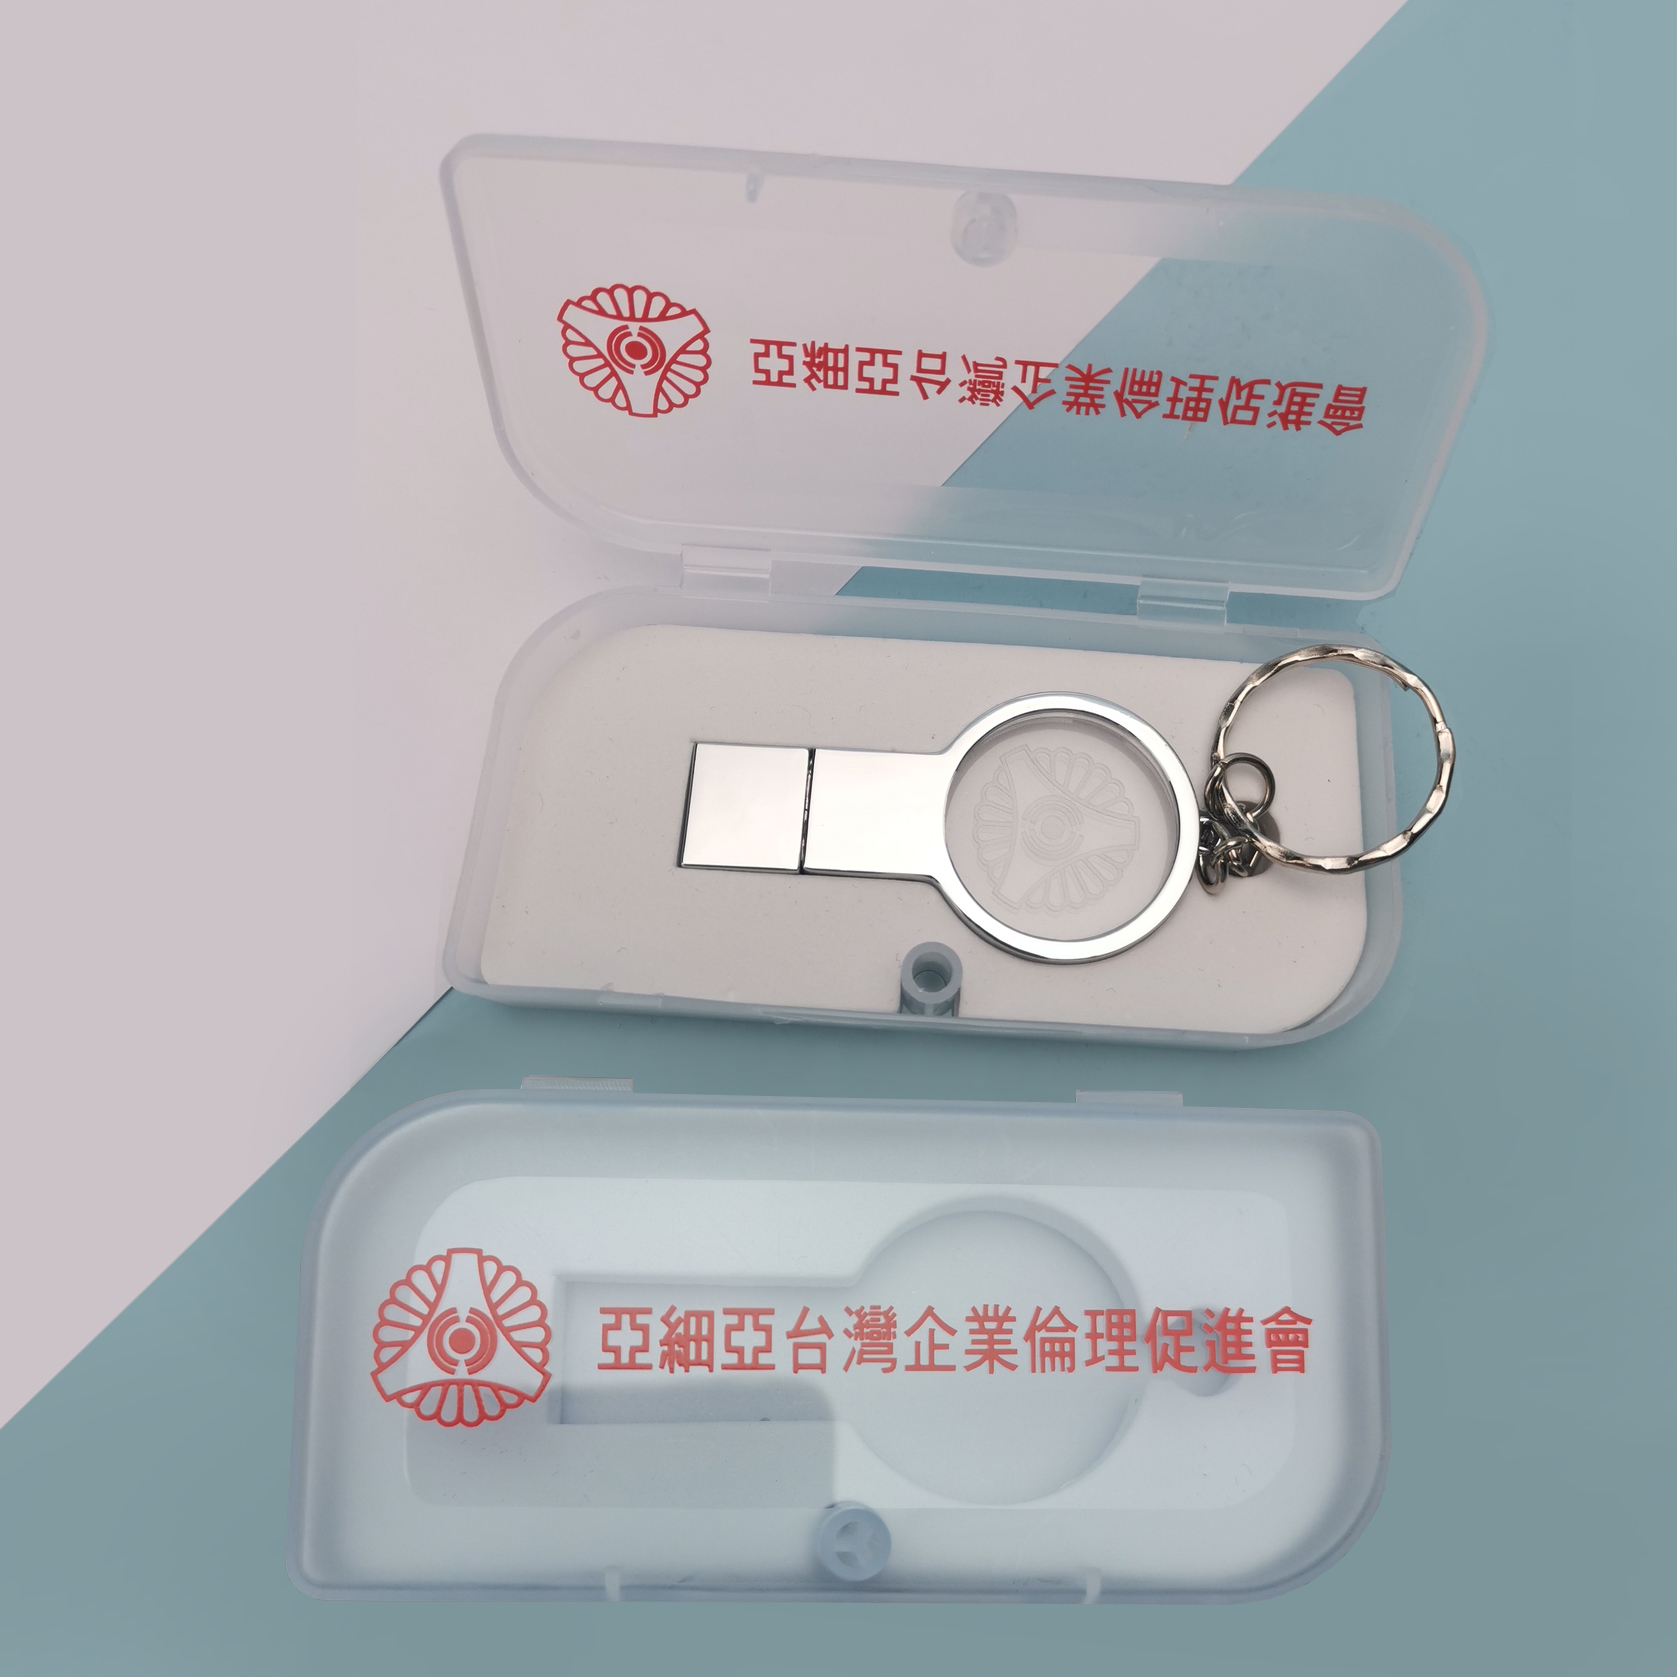 客製化USB、客製化隨身碟、金屬隨身碟、鑰匙圈隨身碟、隨身碟訂製